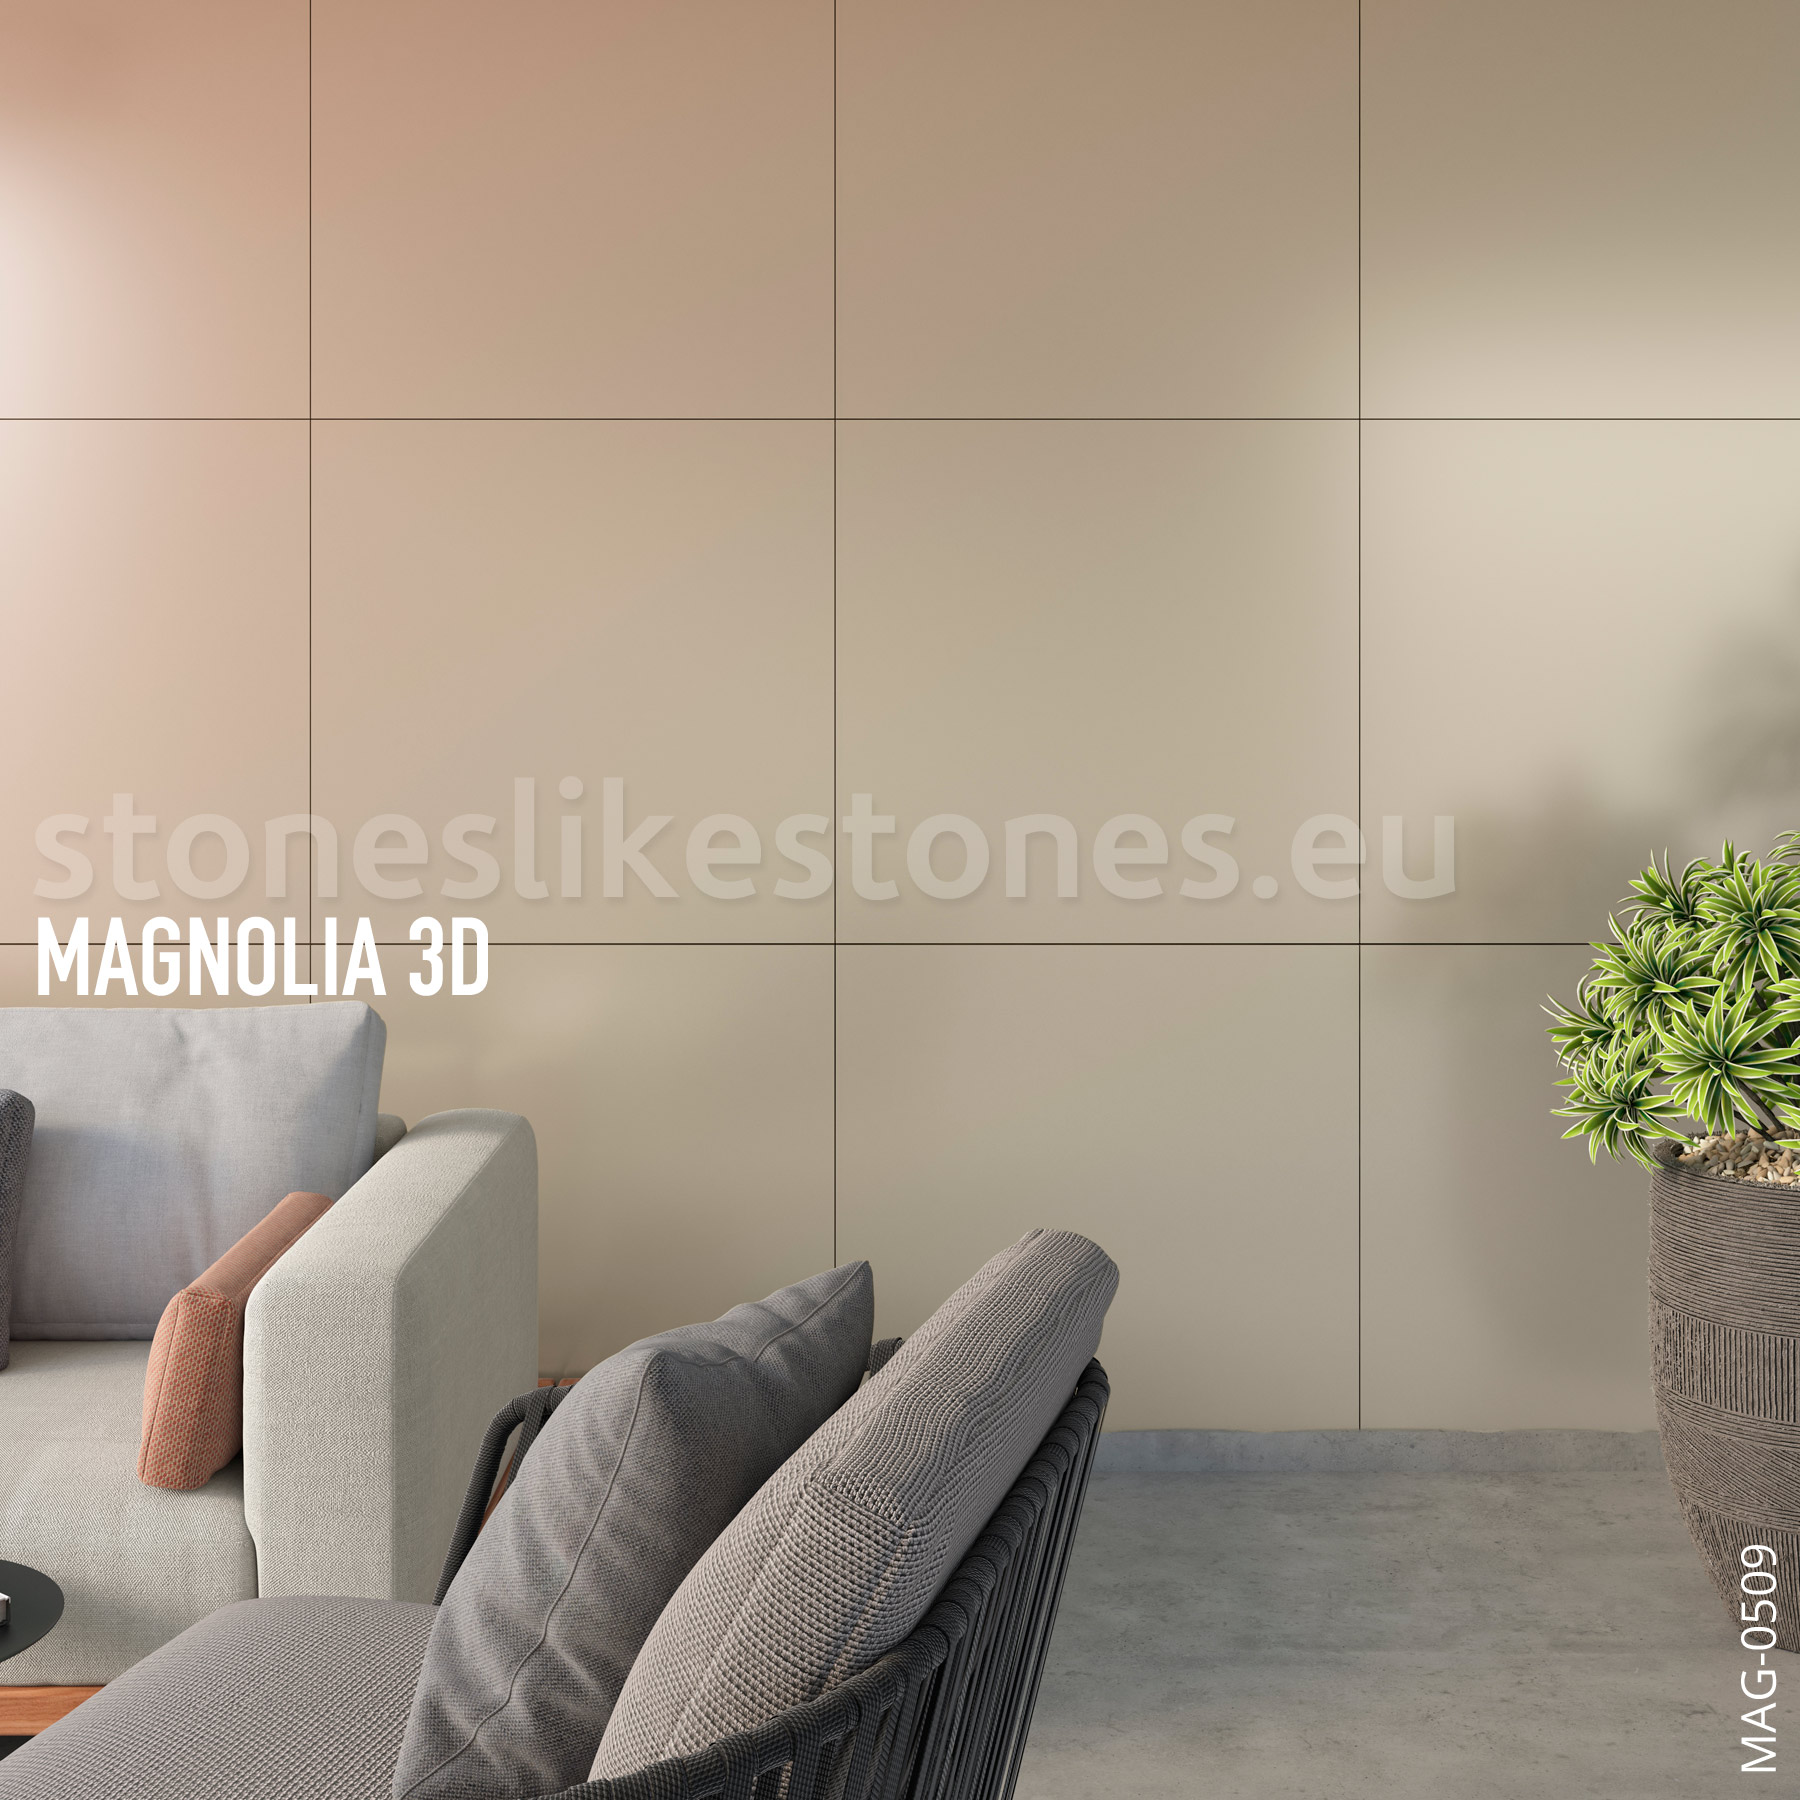 Magnolia 3D – MAG-0102 KOMODO – NACRE